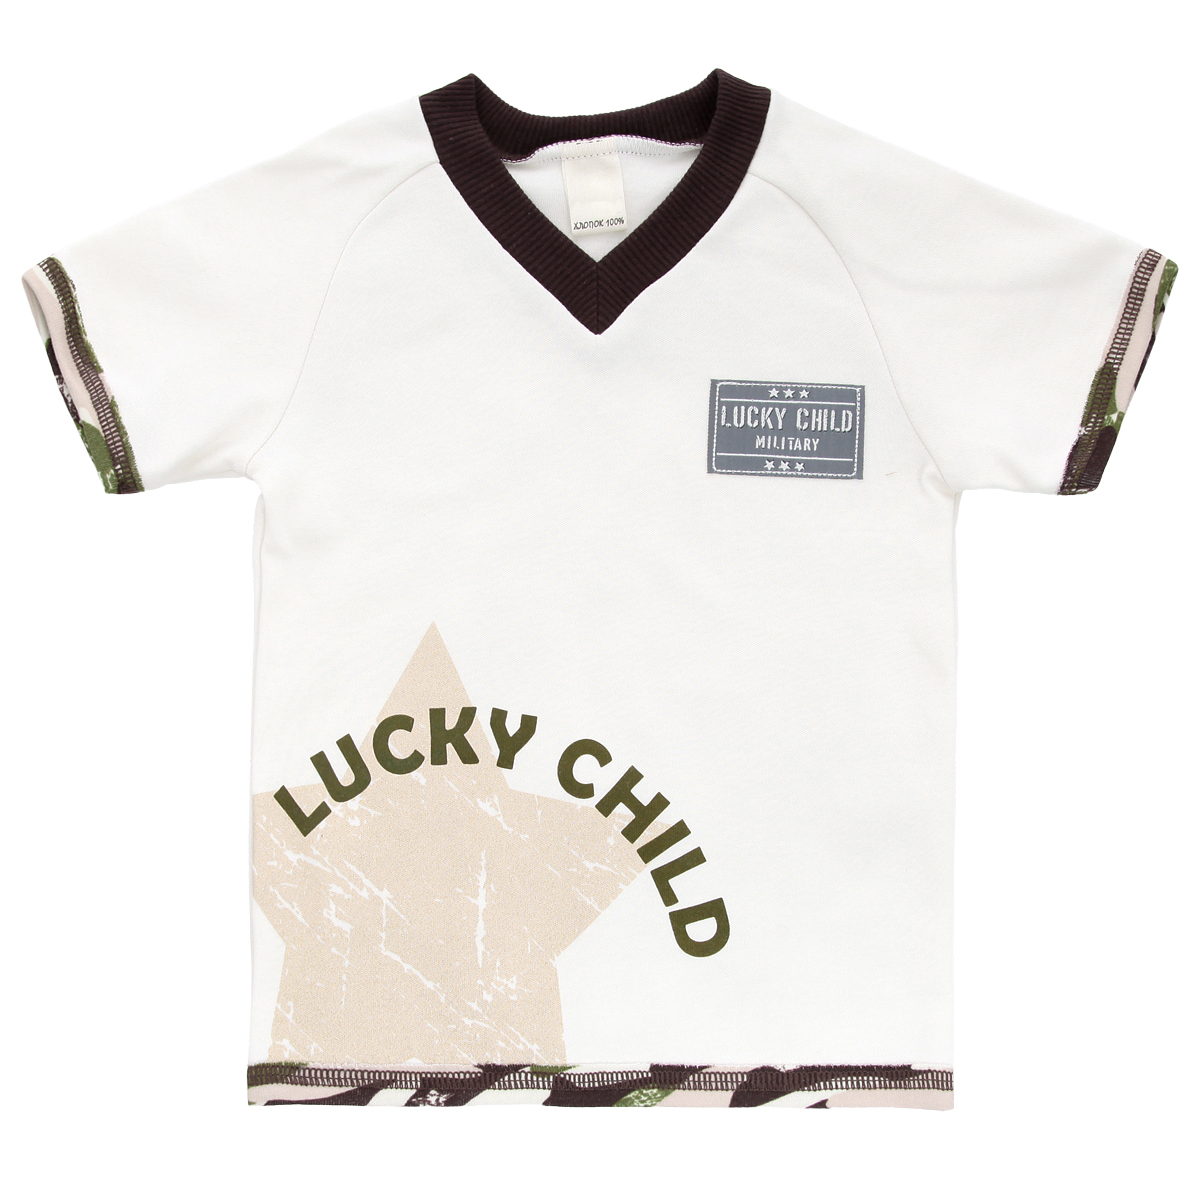 Футболка для мальчика Lucky Child Вежливые люди, цвет: светло-бежевый, темно-коричневый, зеленый. 31-262. Размер 74/80